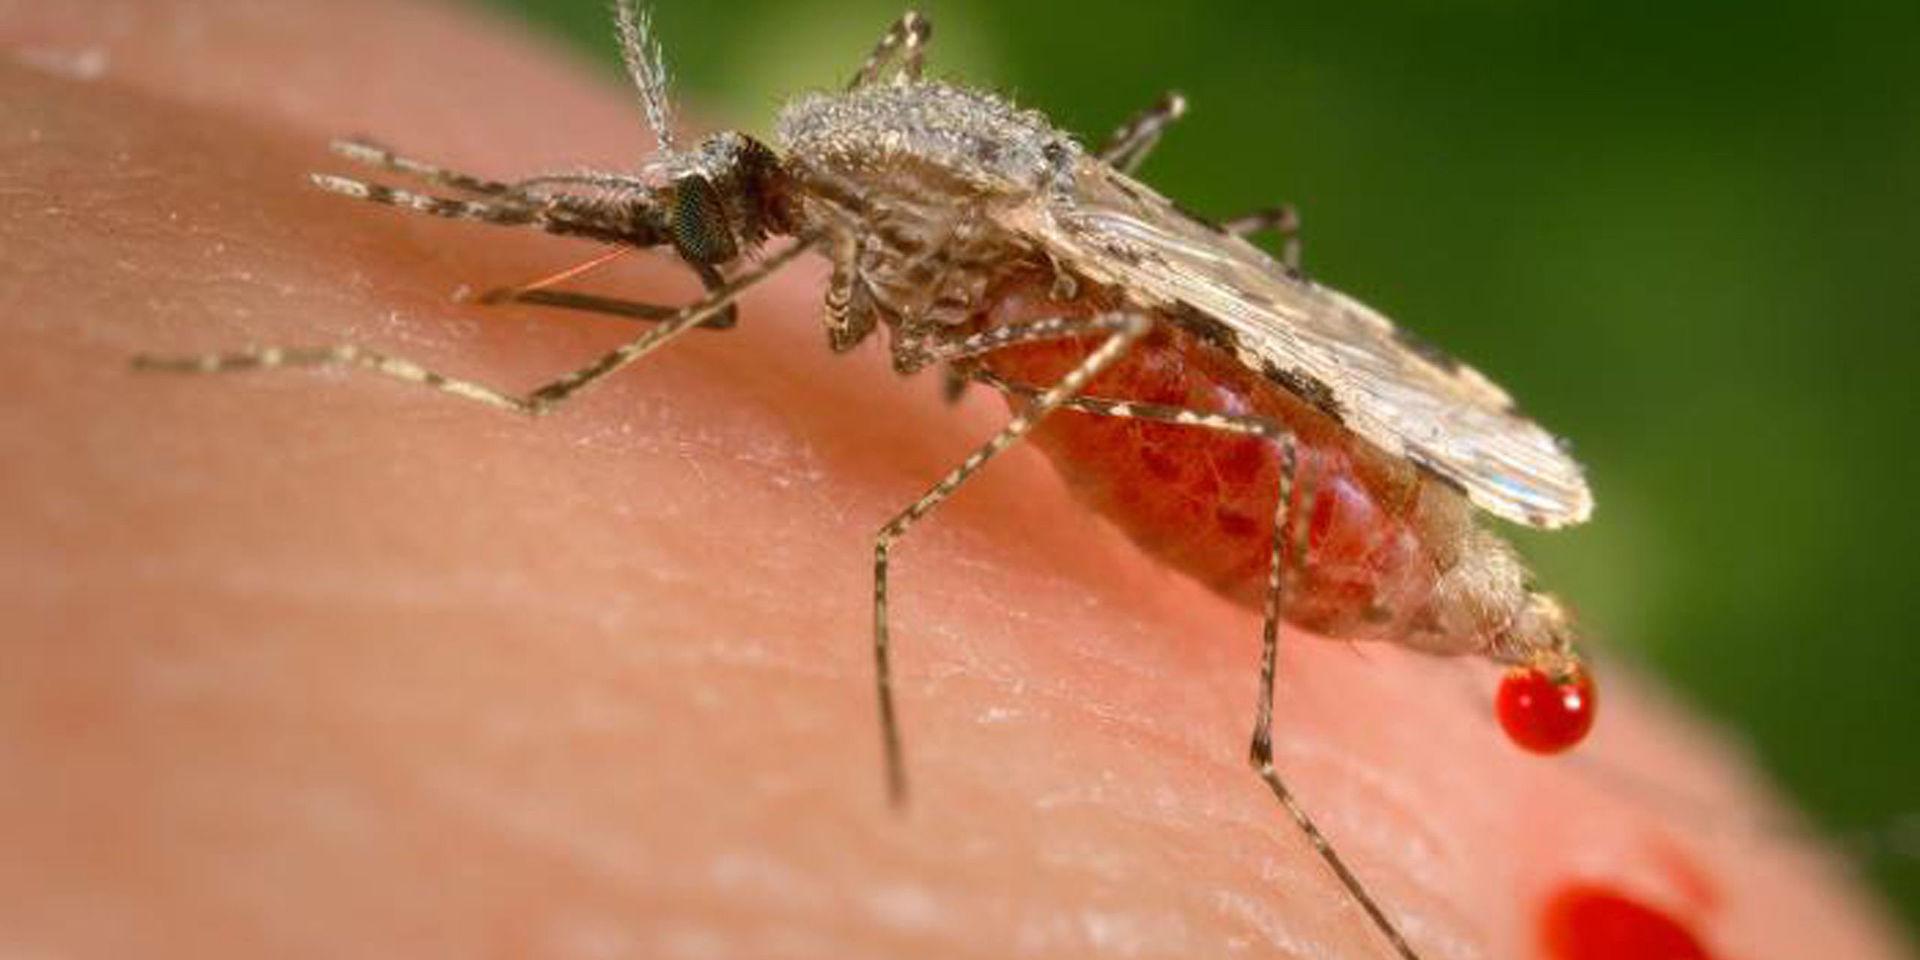 De parasiter som orsakar malaria sprids av myggor av släktet Anopheles. Släktet innefattar cirka 400 arter, varav 30–40 sprider Plasmodium, det vill säga den parasit som orsakar malaria. Malariamyggor kan kännas igen genom att de, när de sitter på ett underlag, har framkroppen framåtlutad på frambenen, som detta exemplar som är i full färd med att suga sig mätt på mänskligt blod med hjälp av sin nålliknande snabel (proboscis).